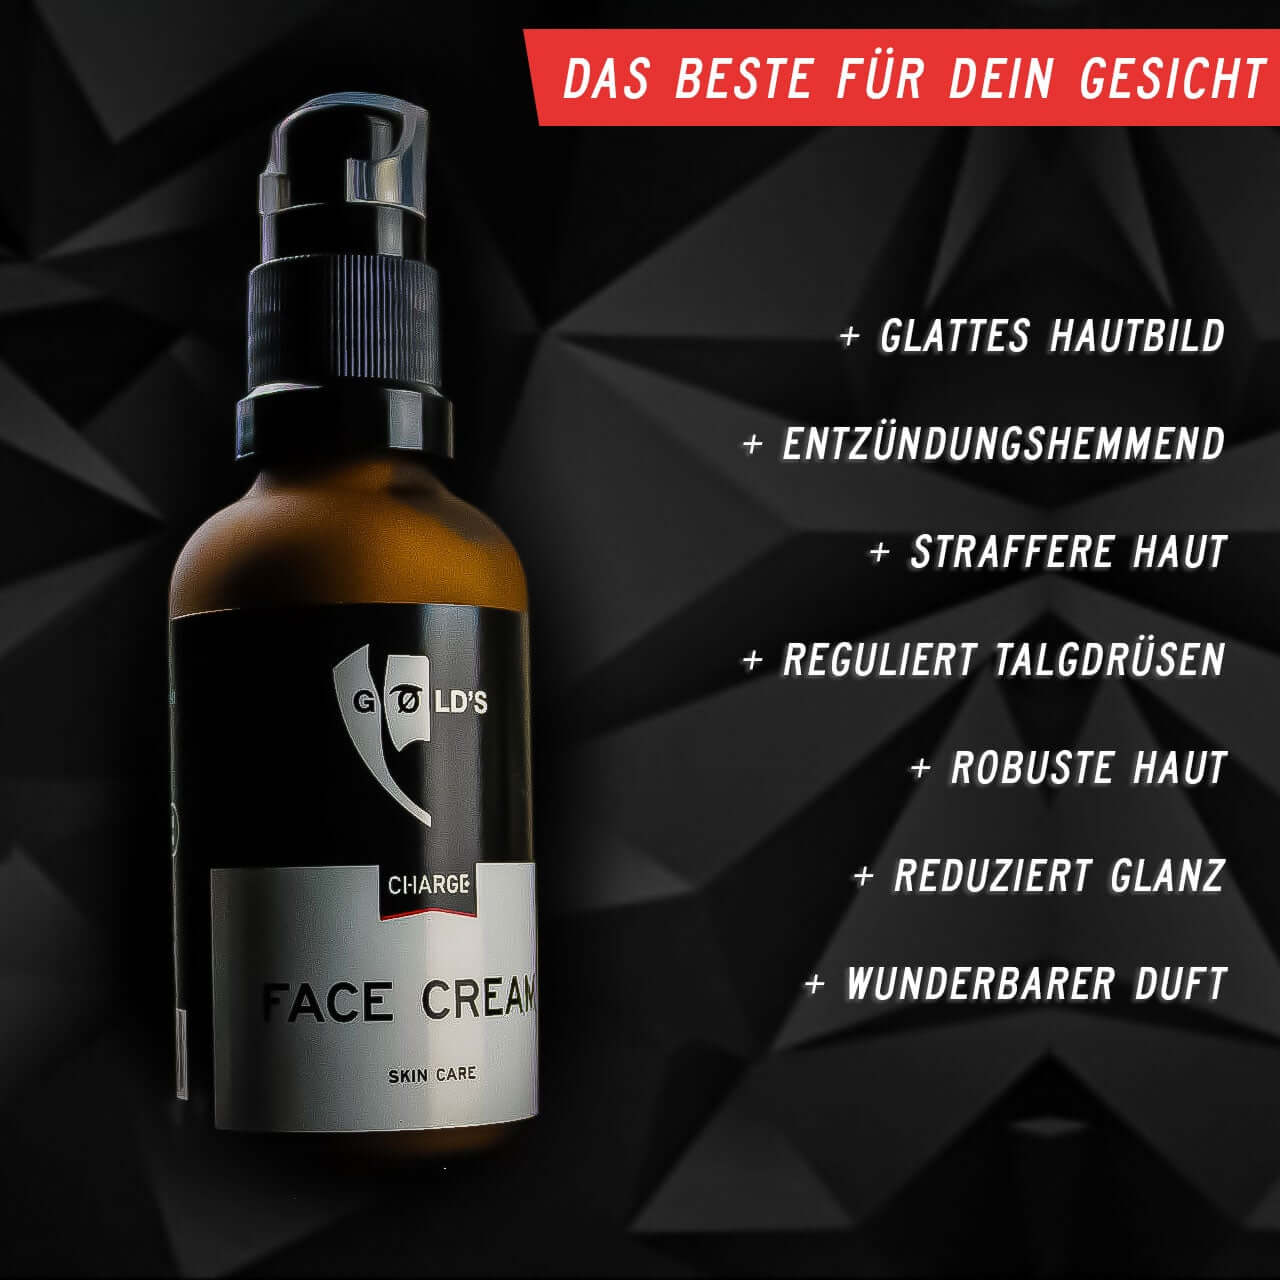 braune Glasflasche Creme GØLD's Charge Face Cream Skin Care schwarzer Hintergrund roter balken 